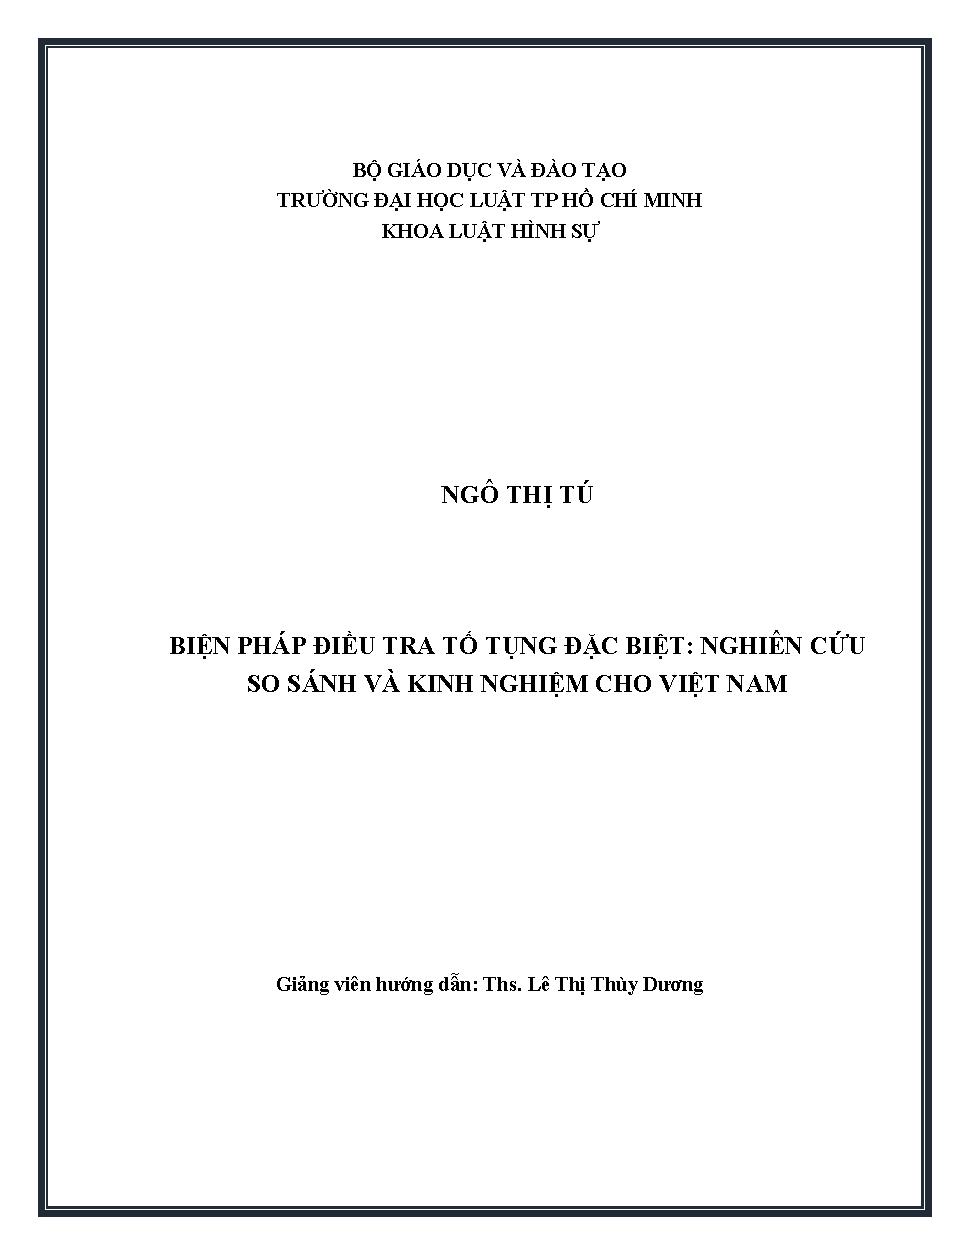 Biện pháp điều tra tố tụng đặc biệt nghiên cứu so sánh và kinh nghiệm cho Việt Nam